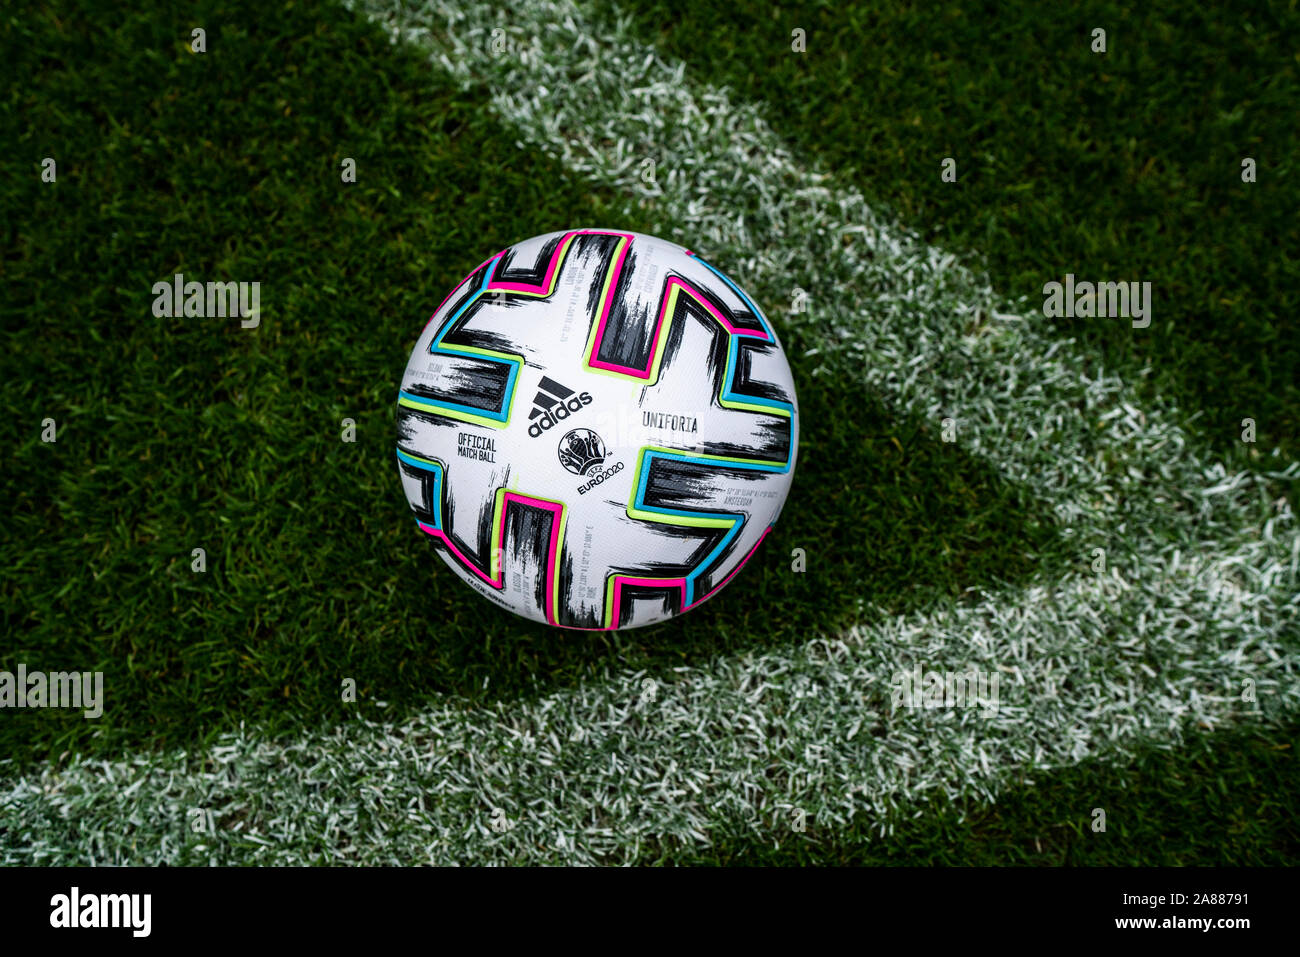 Wembley Stadion in London, Vereinigtes Königreich, 6.11.2019, Adidas "Uniforia", dem offiziellen Spielball der EURO 2020 Stockfoto